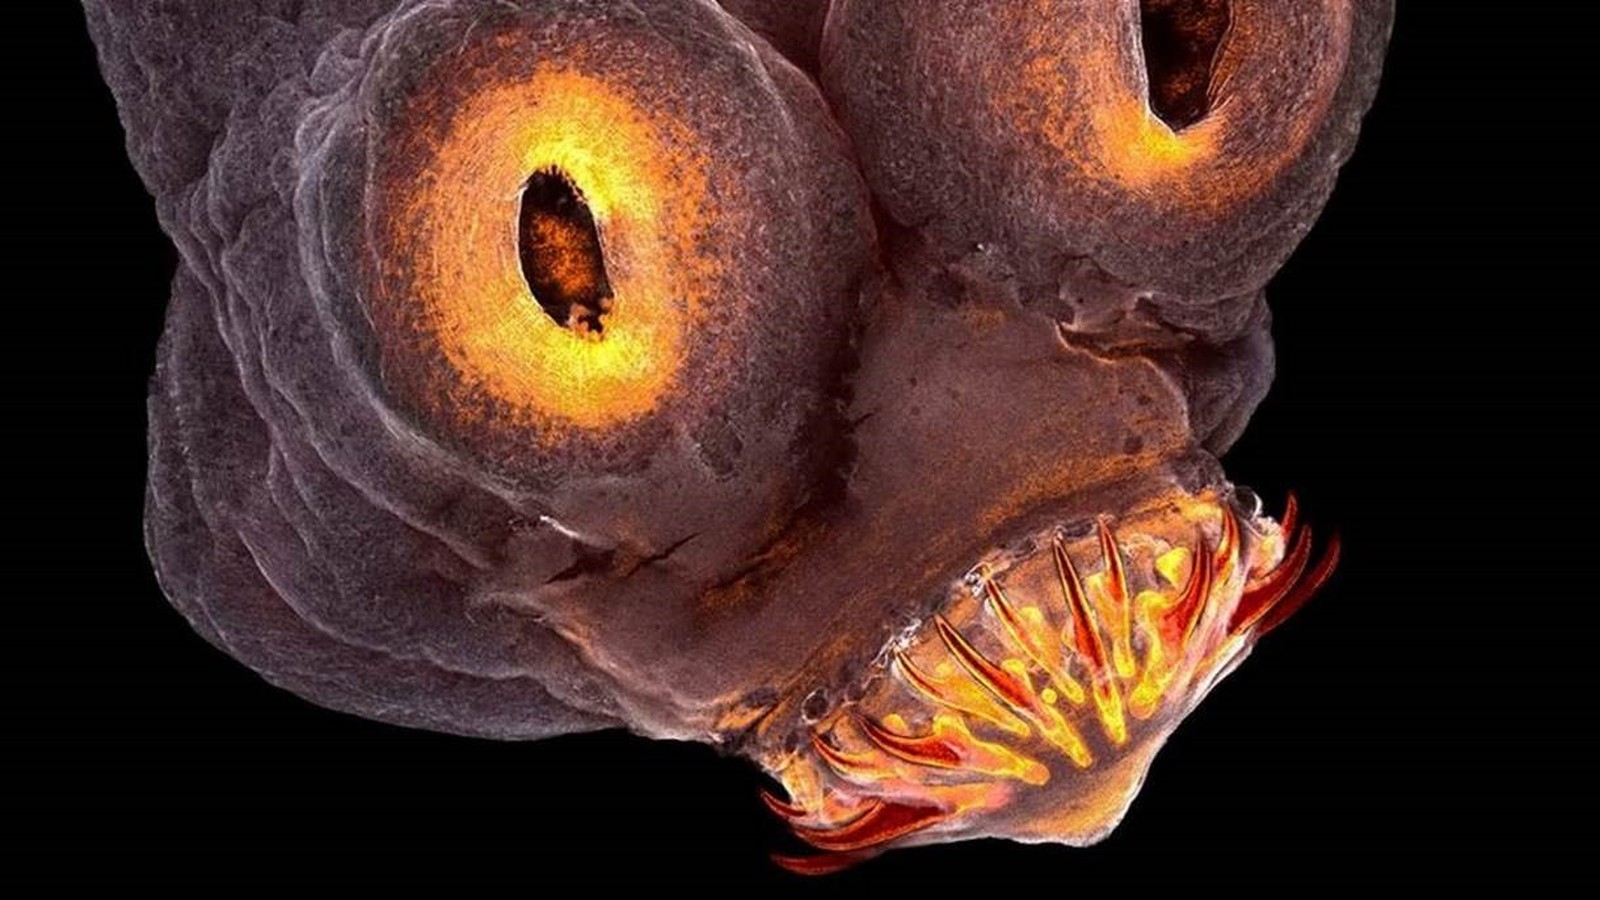 A cabeça de uma tênia, verme que pode parasitar vários animais, inclusive o homem (Foto: TERESA ZGODA/Royal Photographic Society)